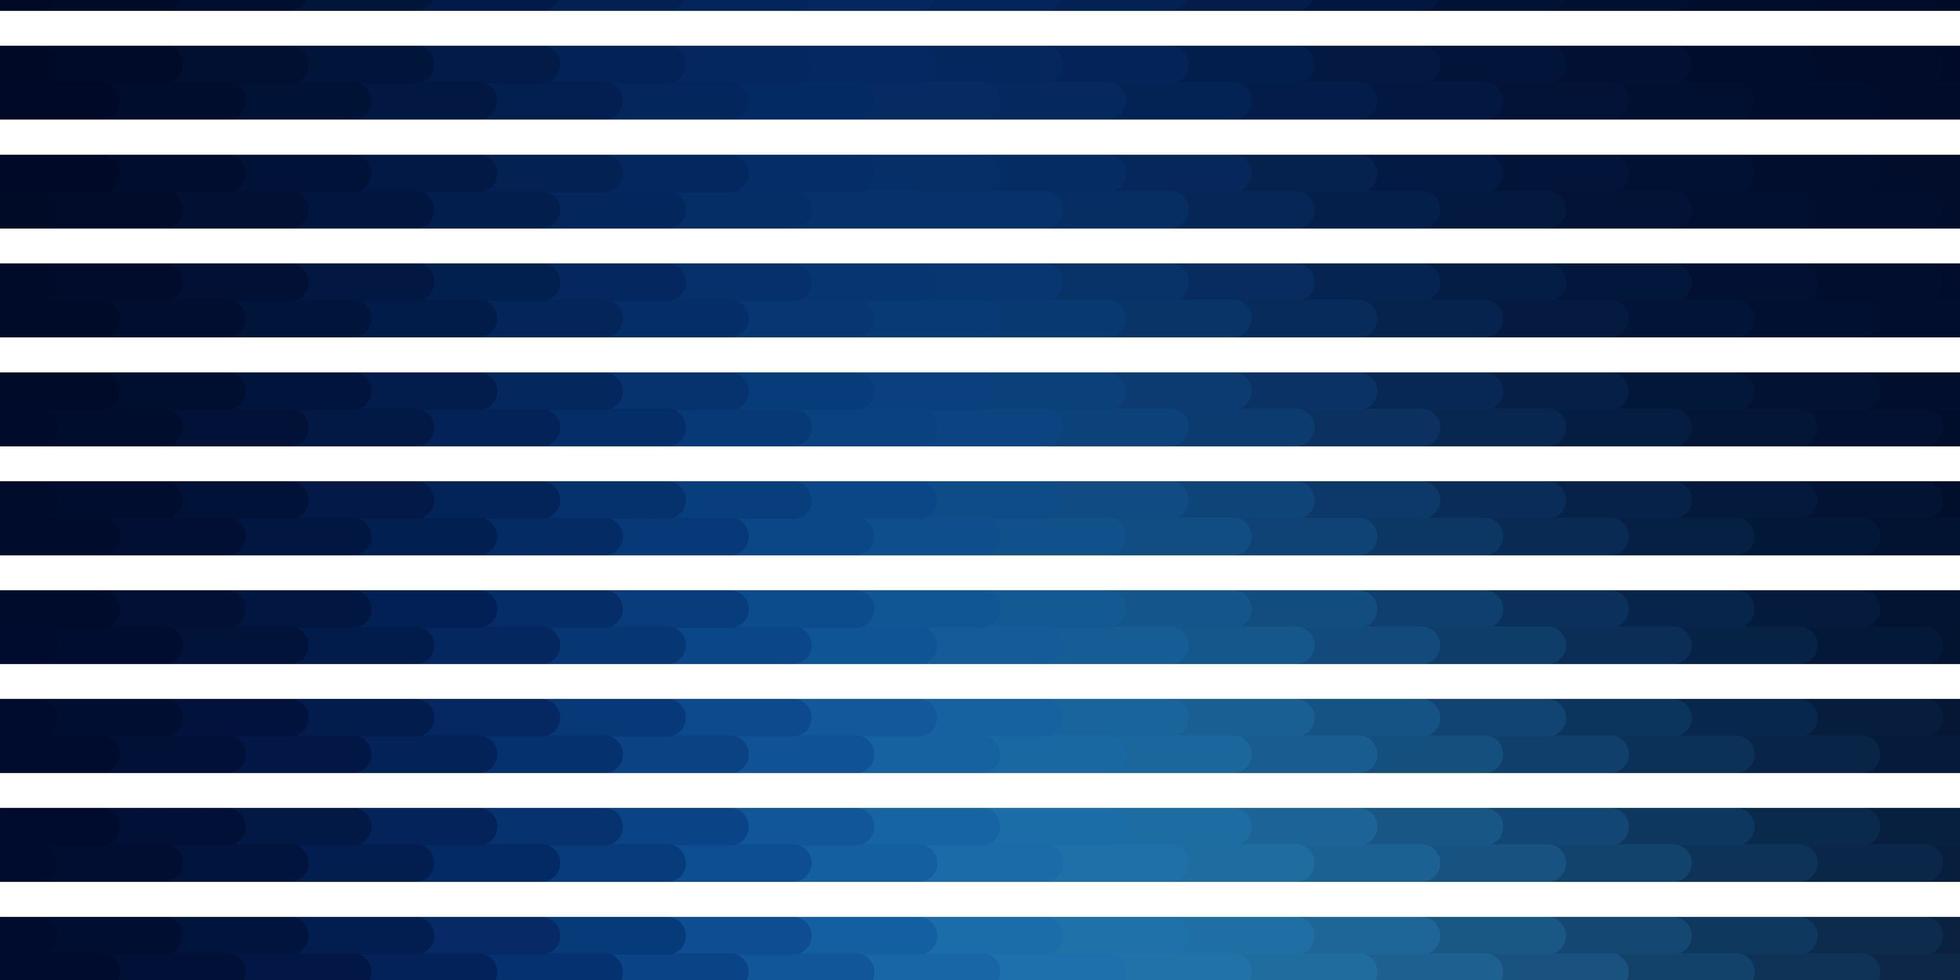 sfondo vettoriale azzurro con linee.